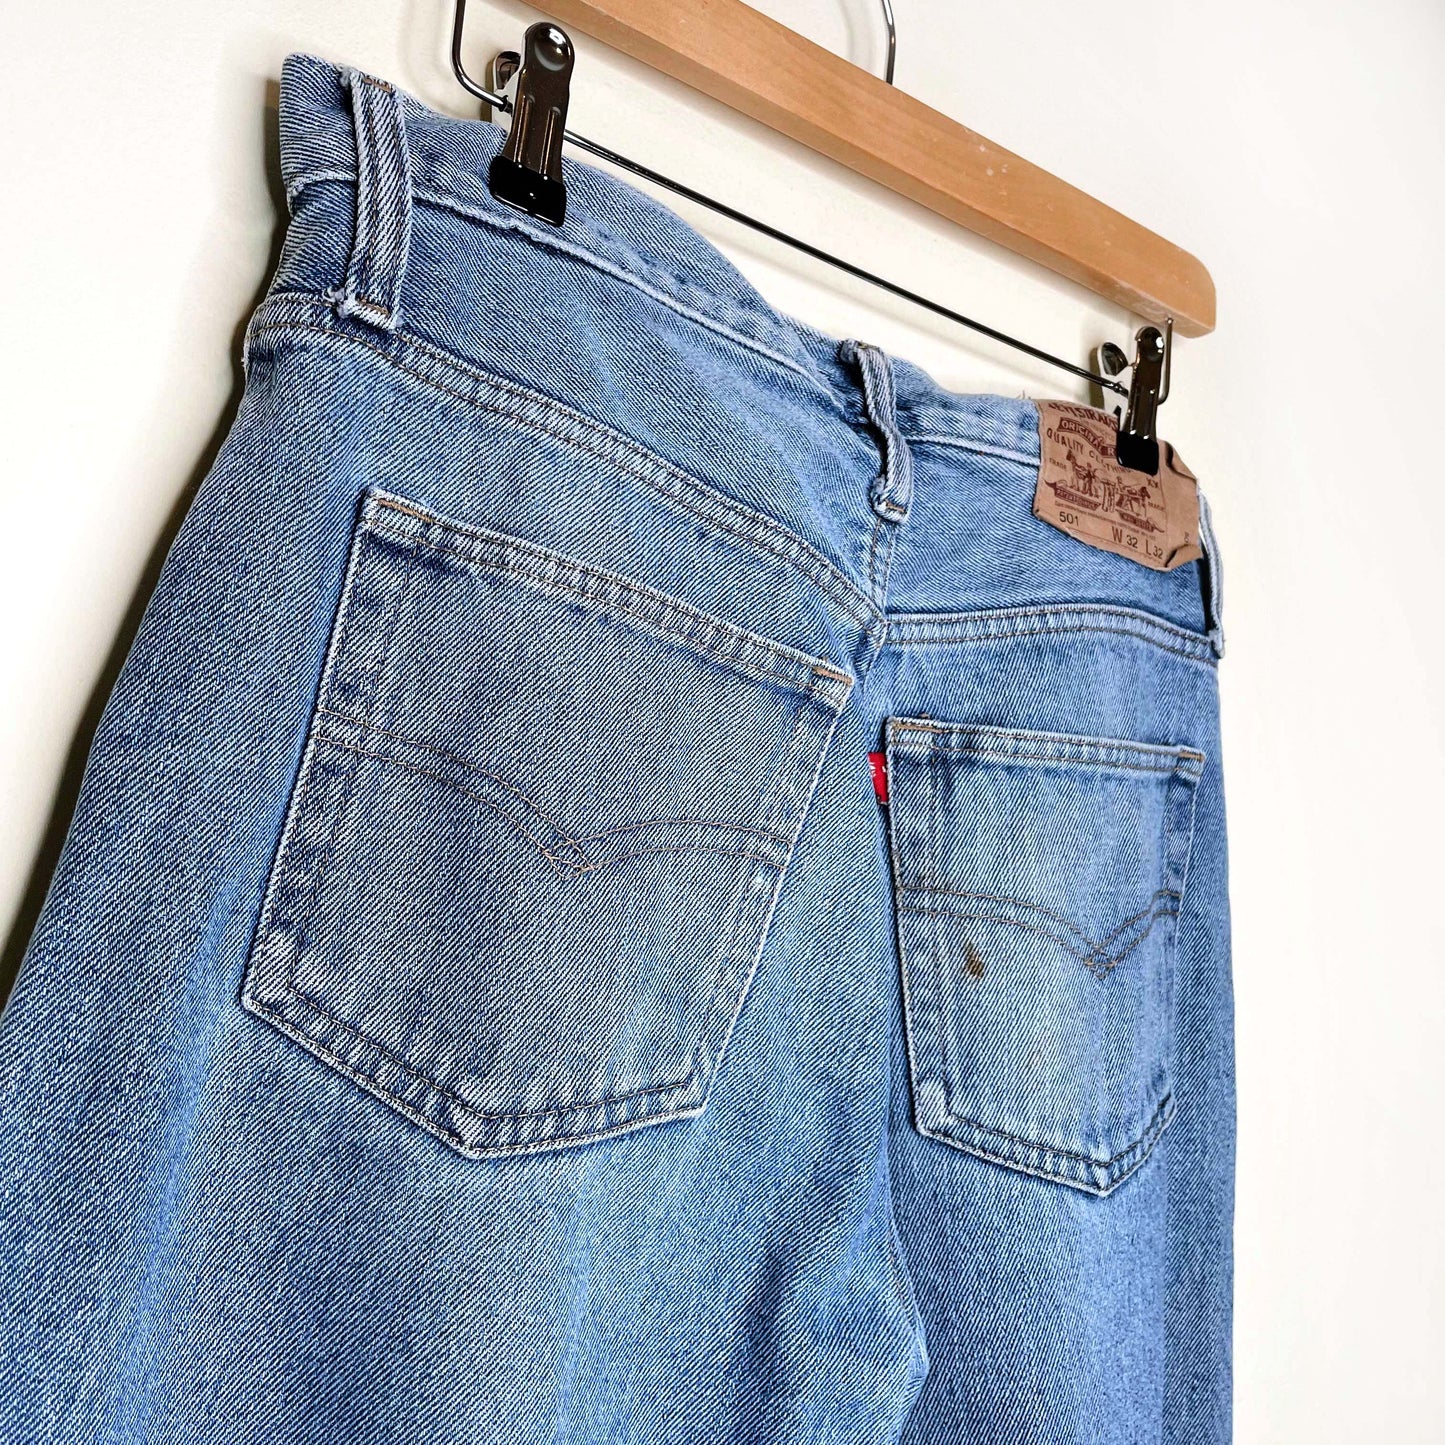 vintage 90's levi's 501 baggy blue jeans - size 32